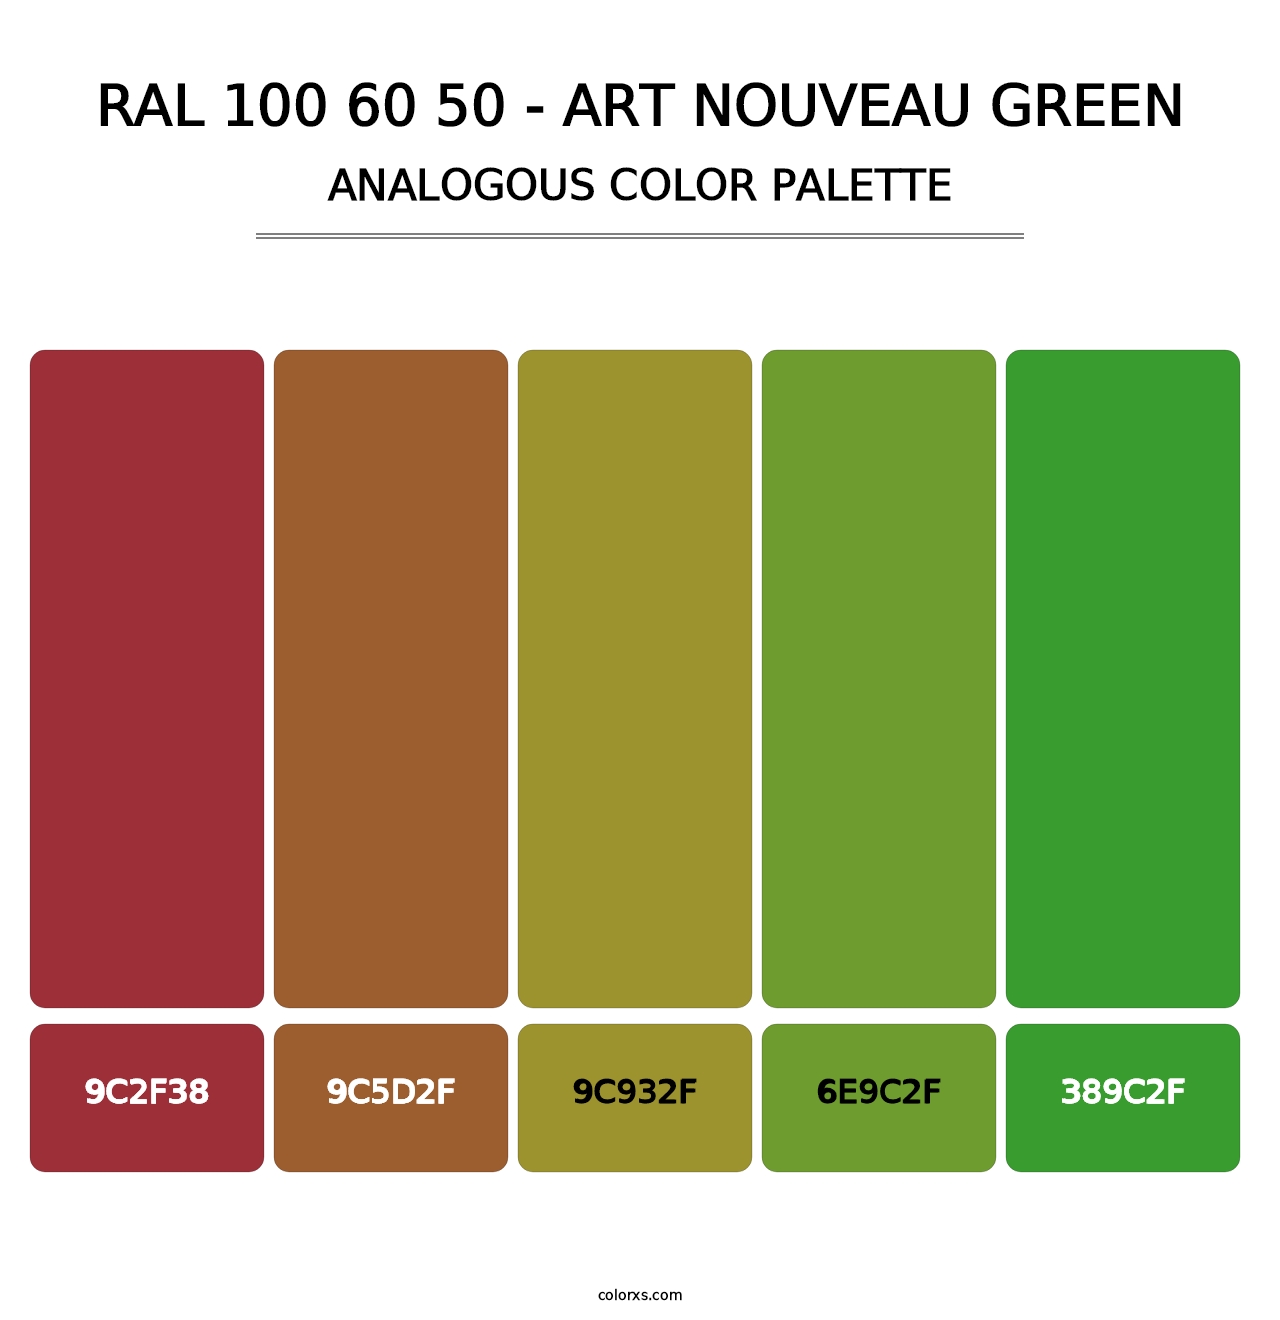 RAL 100 60 50 - Art Nouveau Green - Analogous Color Palette